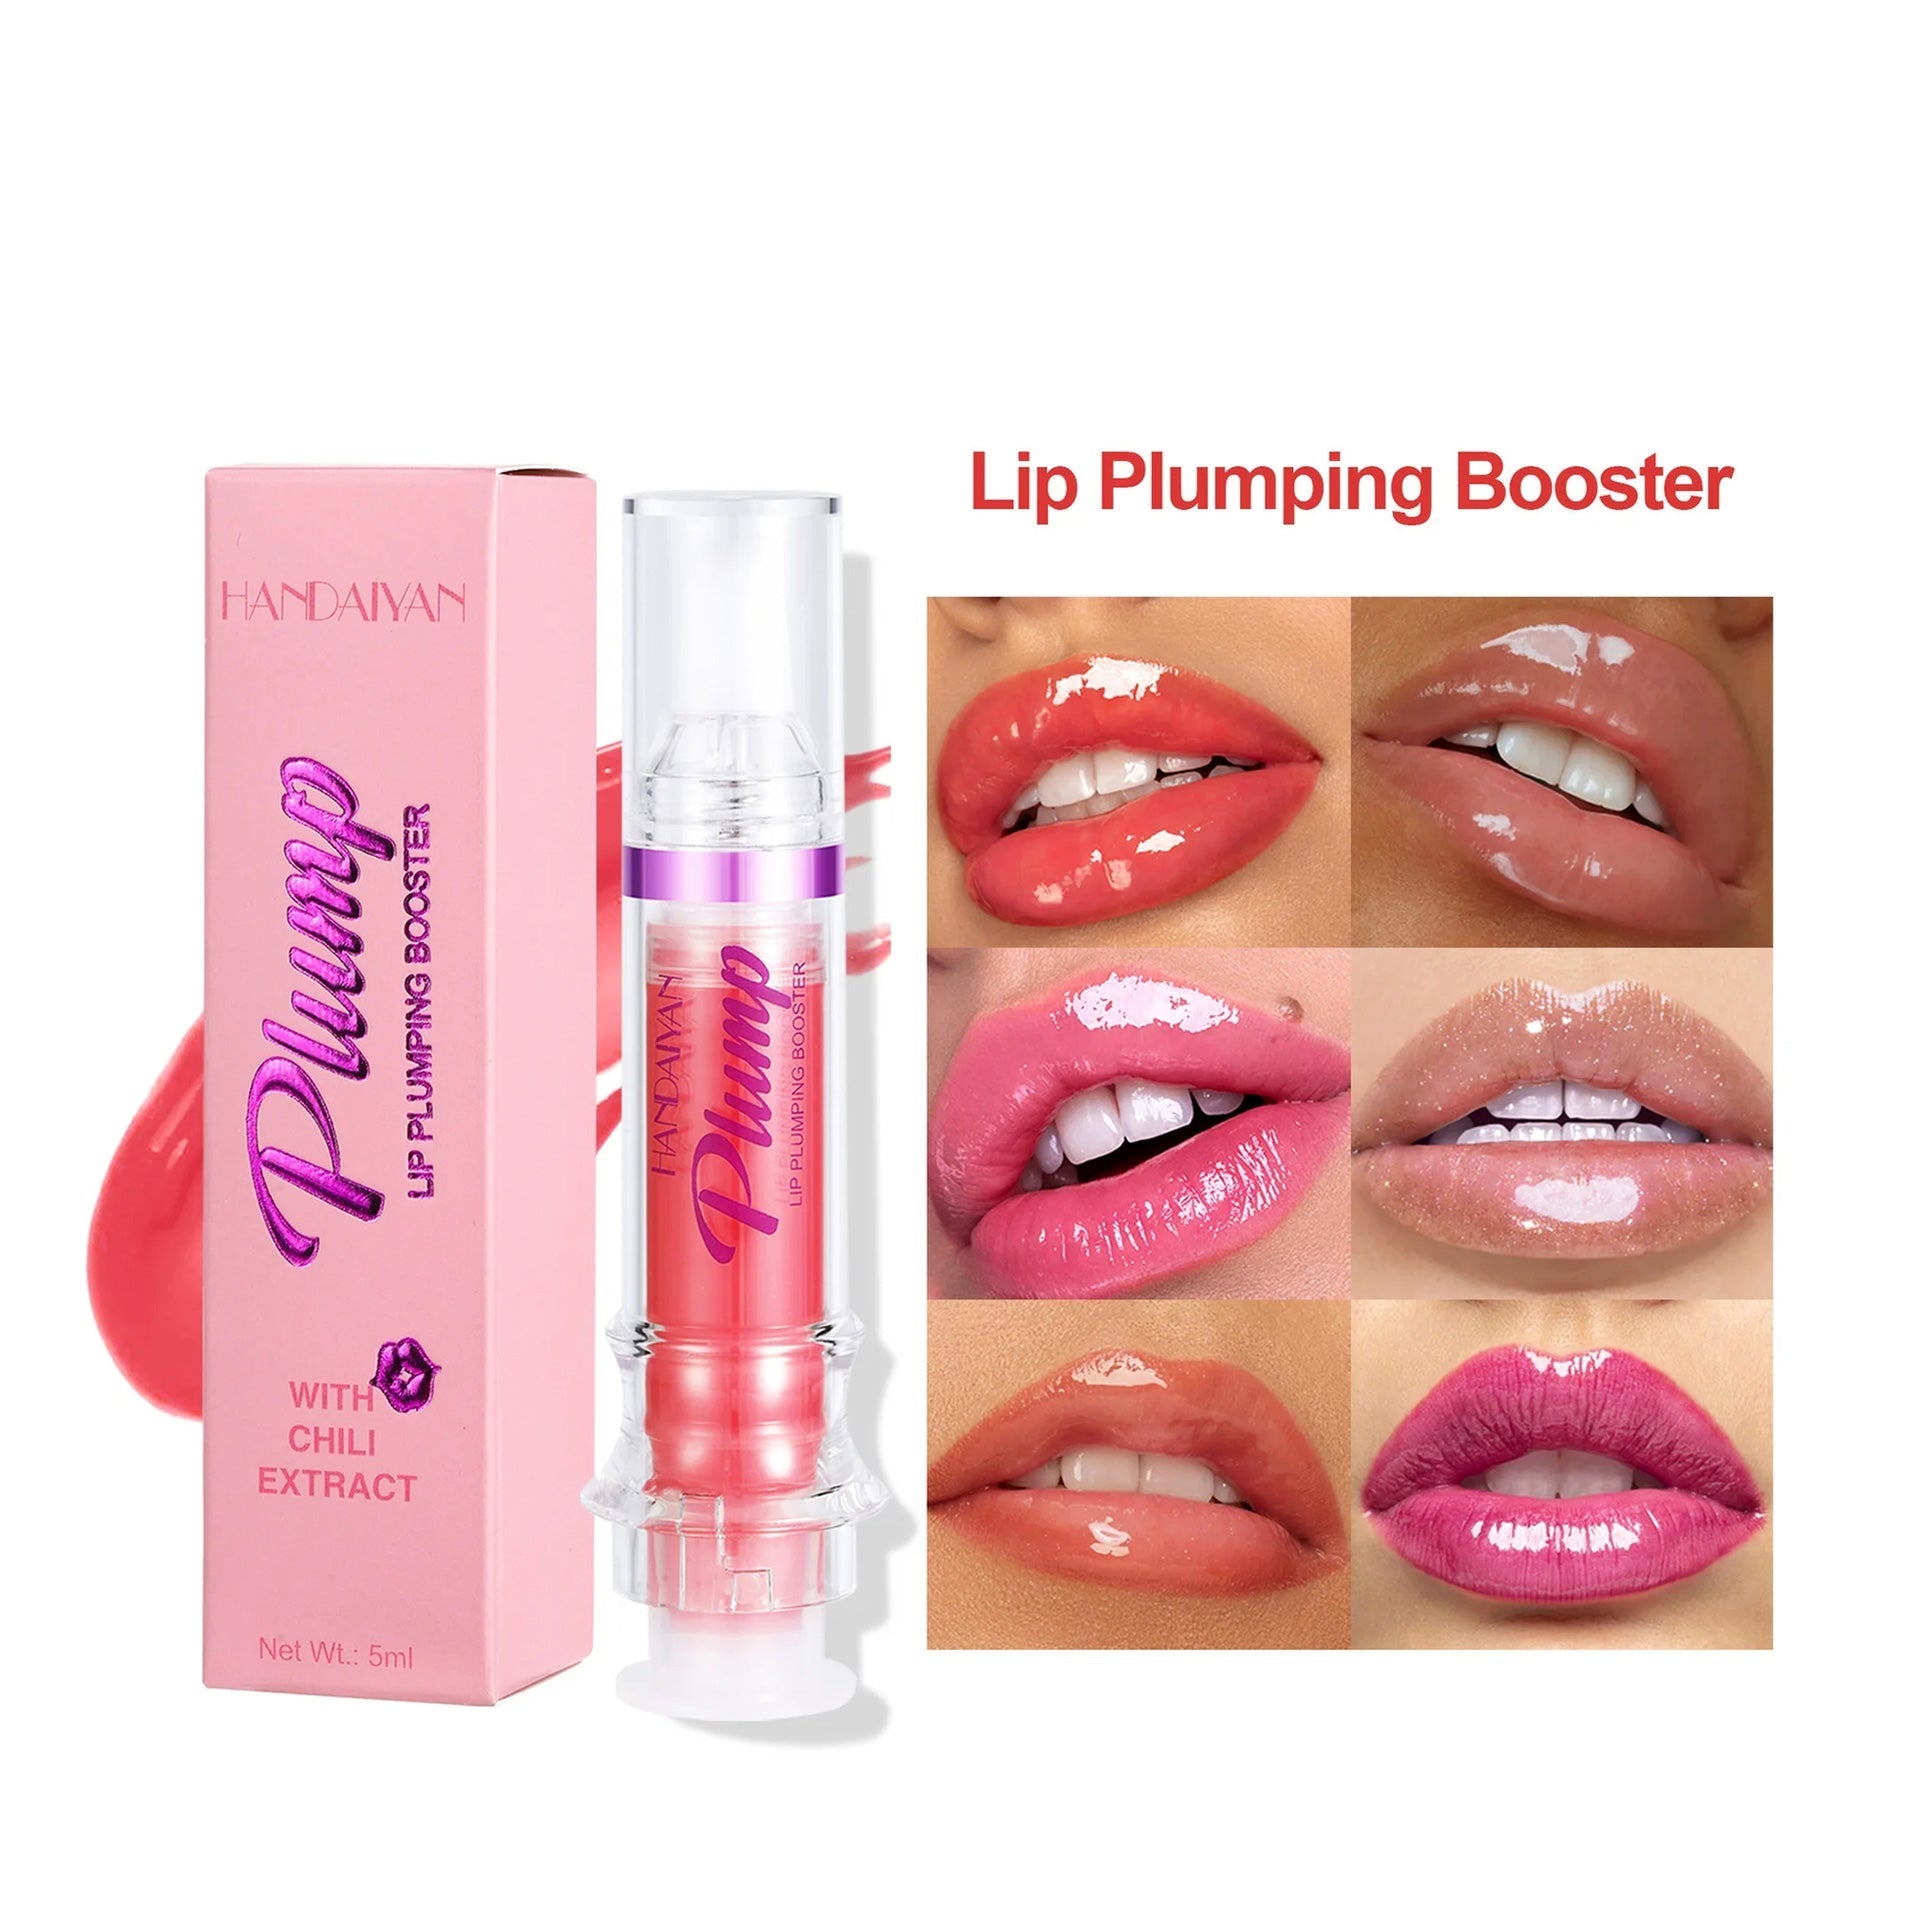 New Tube Lip Rich Lip Color Slightly Spicy Lip Honey Lip Glass Mirror Face Lip Mirror Liquid Lipstick AliFinds